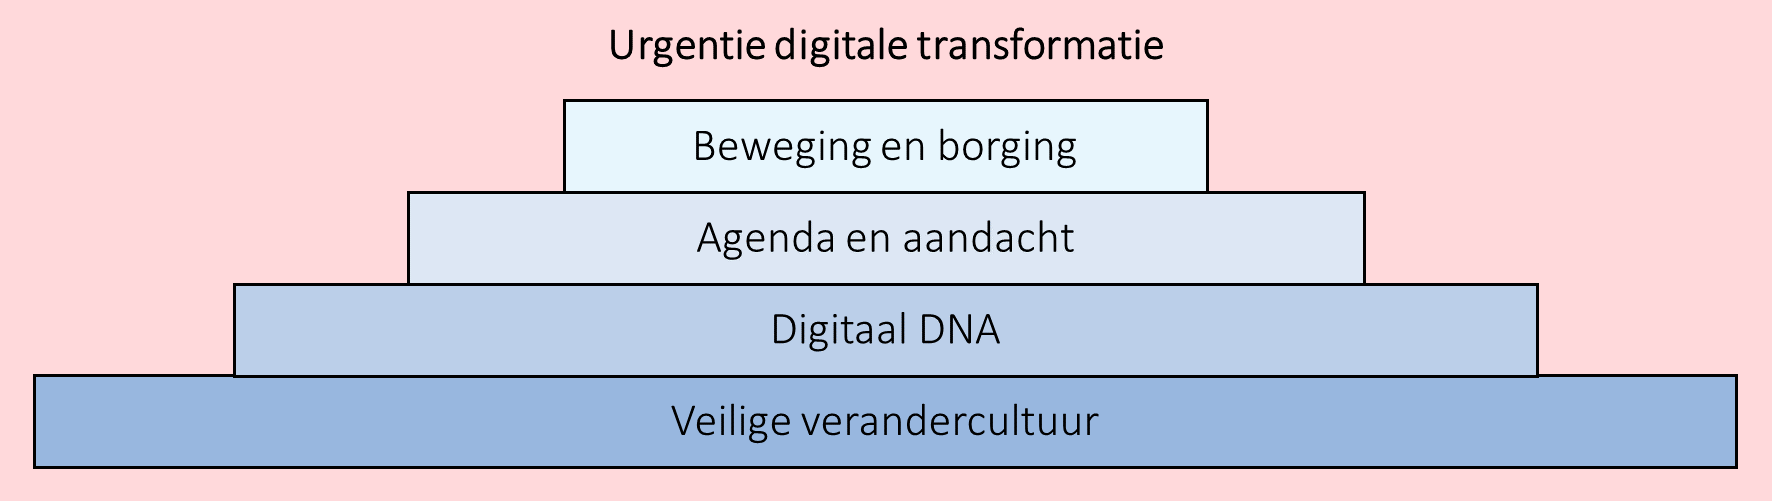 urgentie digitale transformatie